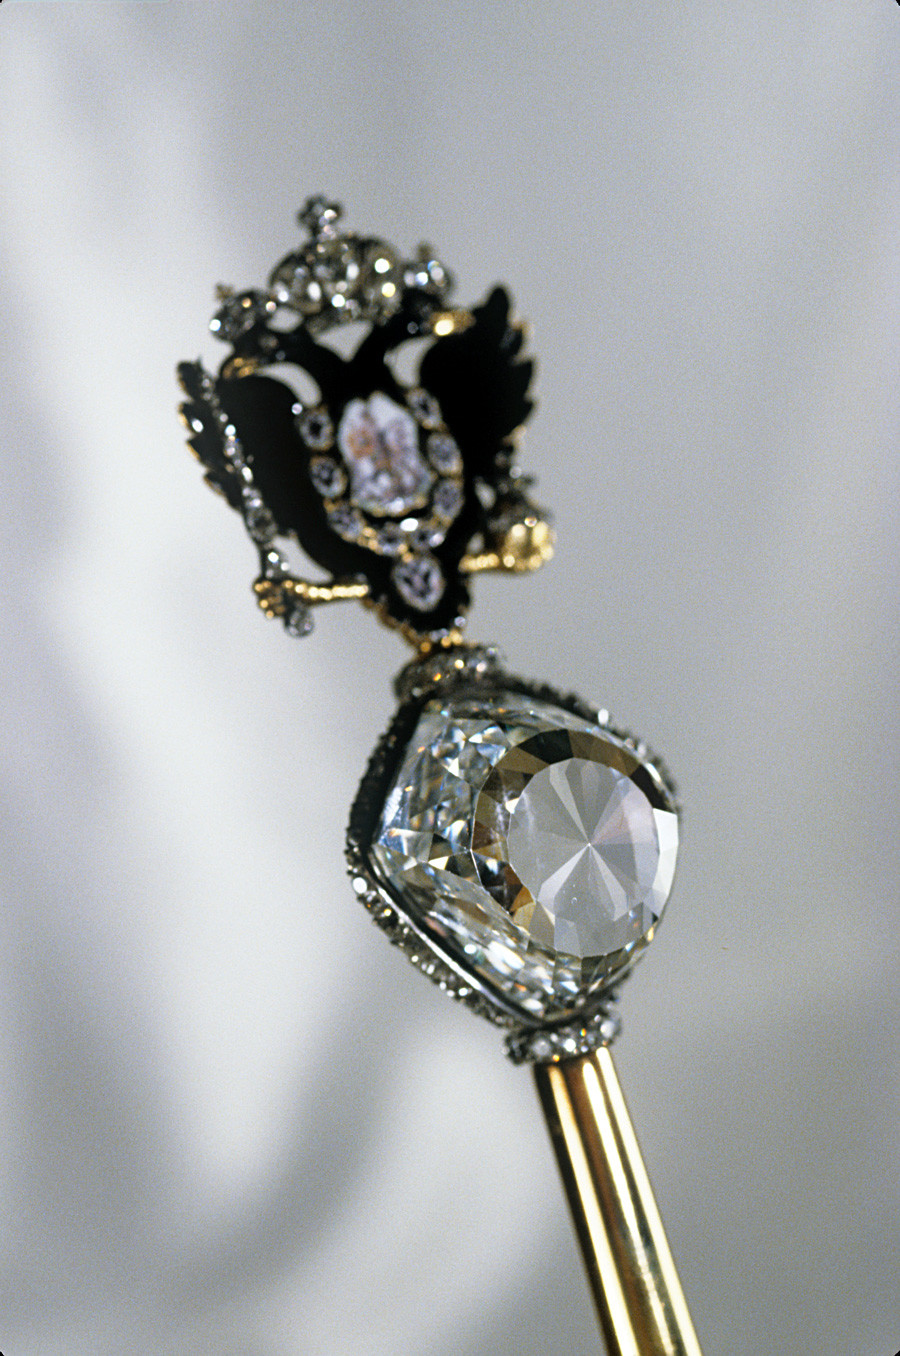 Императорски скиптар. Направљен за Катарину II почетком 1770-их, дугачак 59,5 цм. Злато прекривено са осам дијамантских прстенова. На врху је брилијант „Орлов“ са златним двоглавим орлом украшеним црним емајлом са брилијантима. Дијамантски фонд РФ.